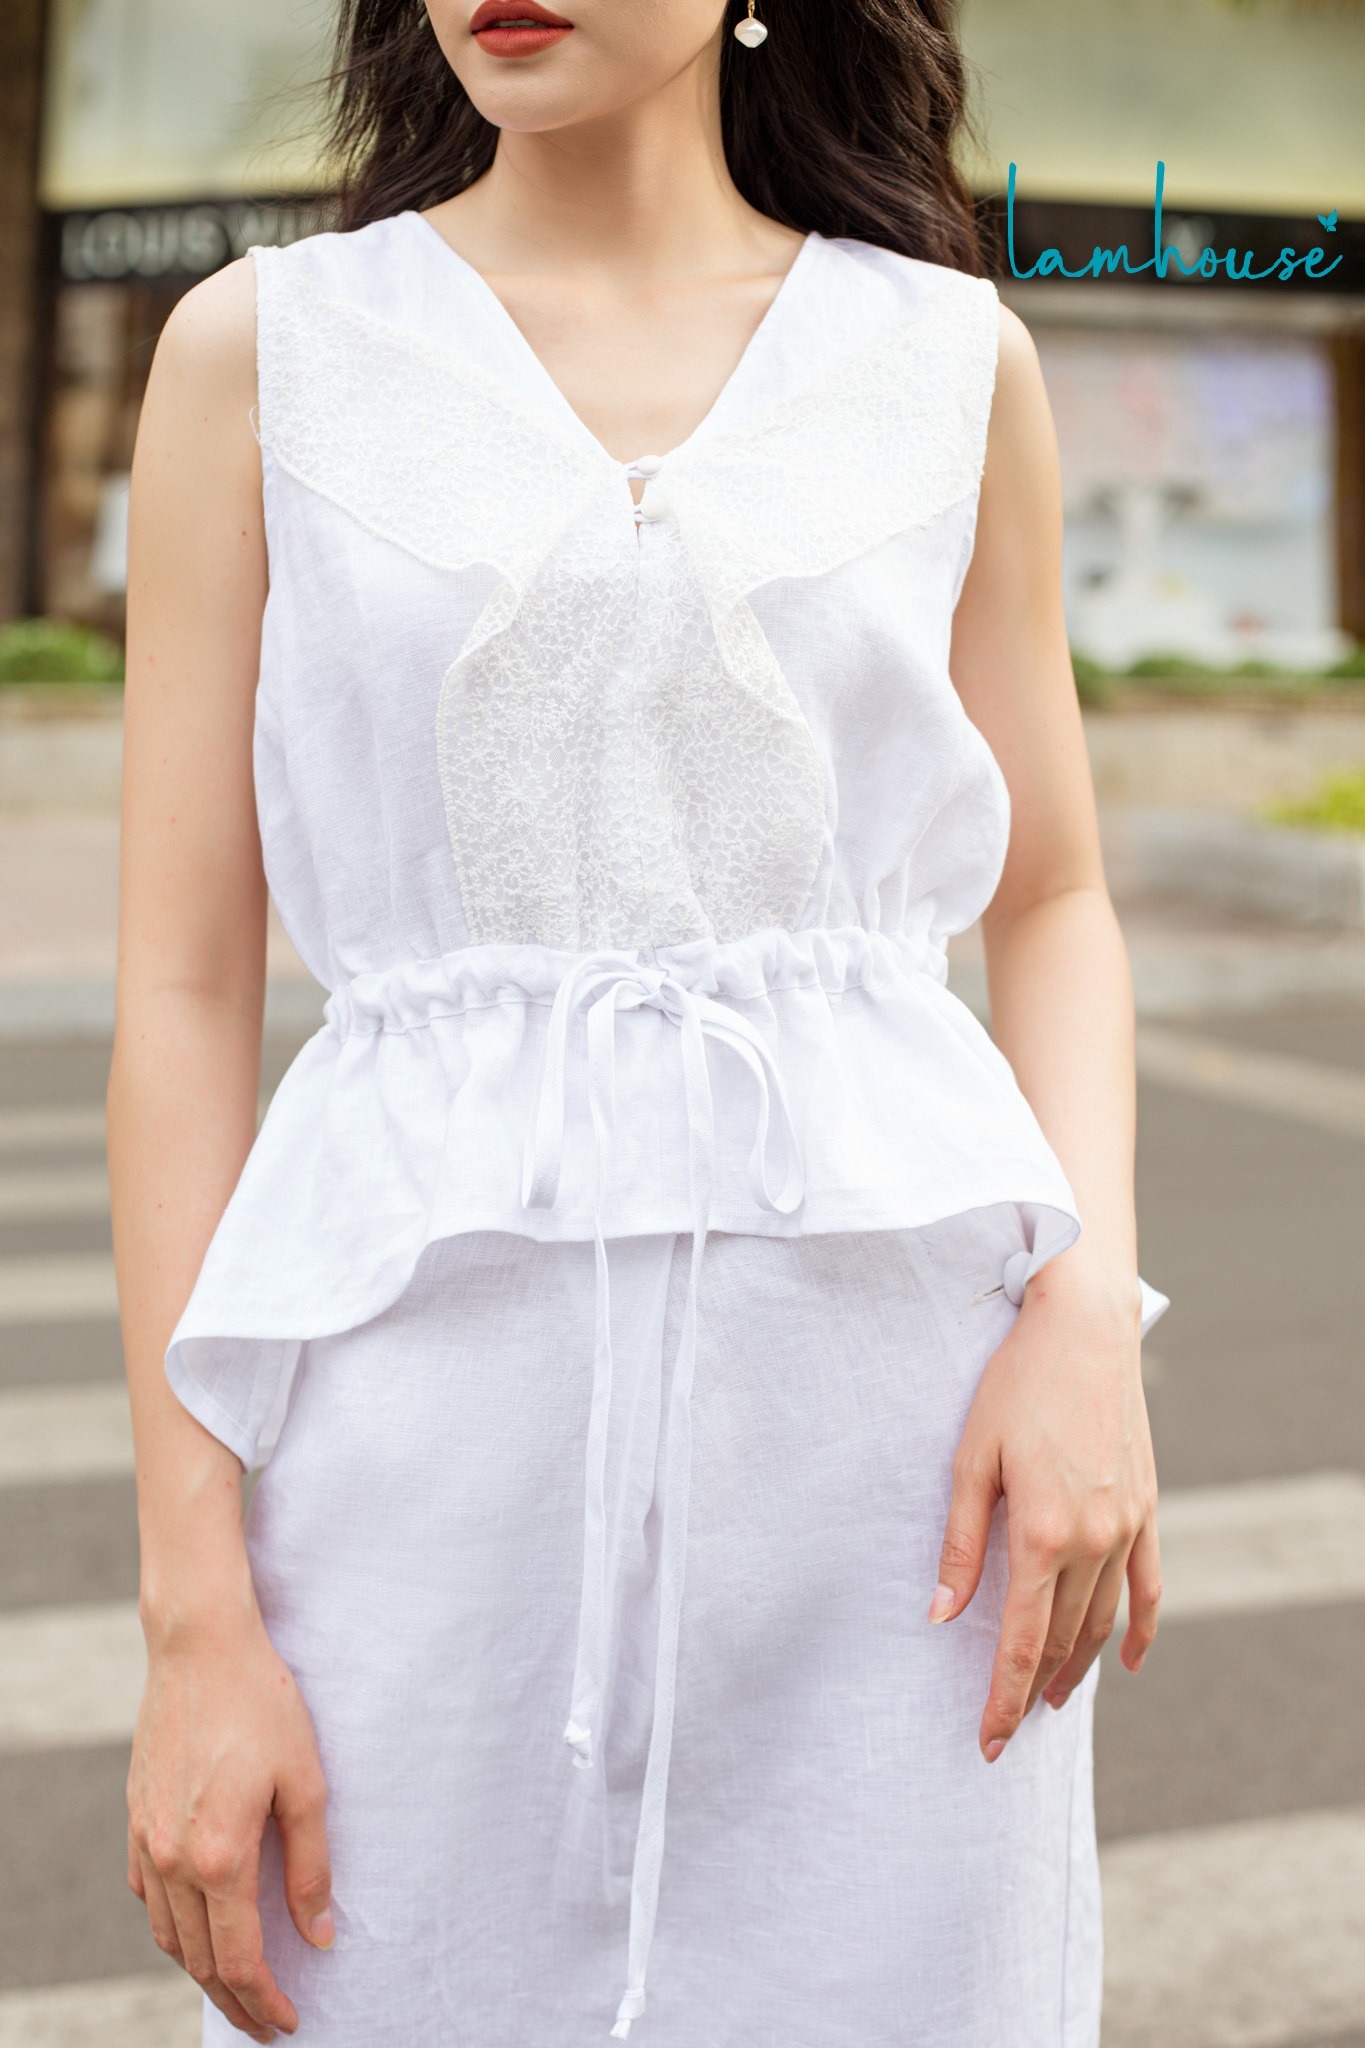 Chân váy xô trắng tầng thêu hoa chân iuu quá mới xĩu 10/10 hiệu GRL Japan  luôn một em must have trong tủ đồ Dài 8... | Instagram